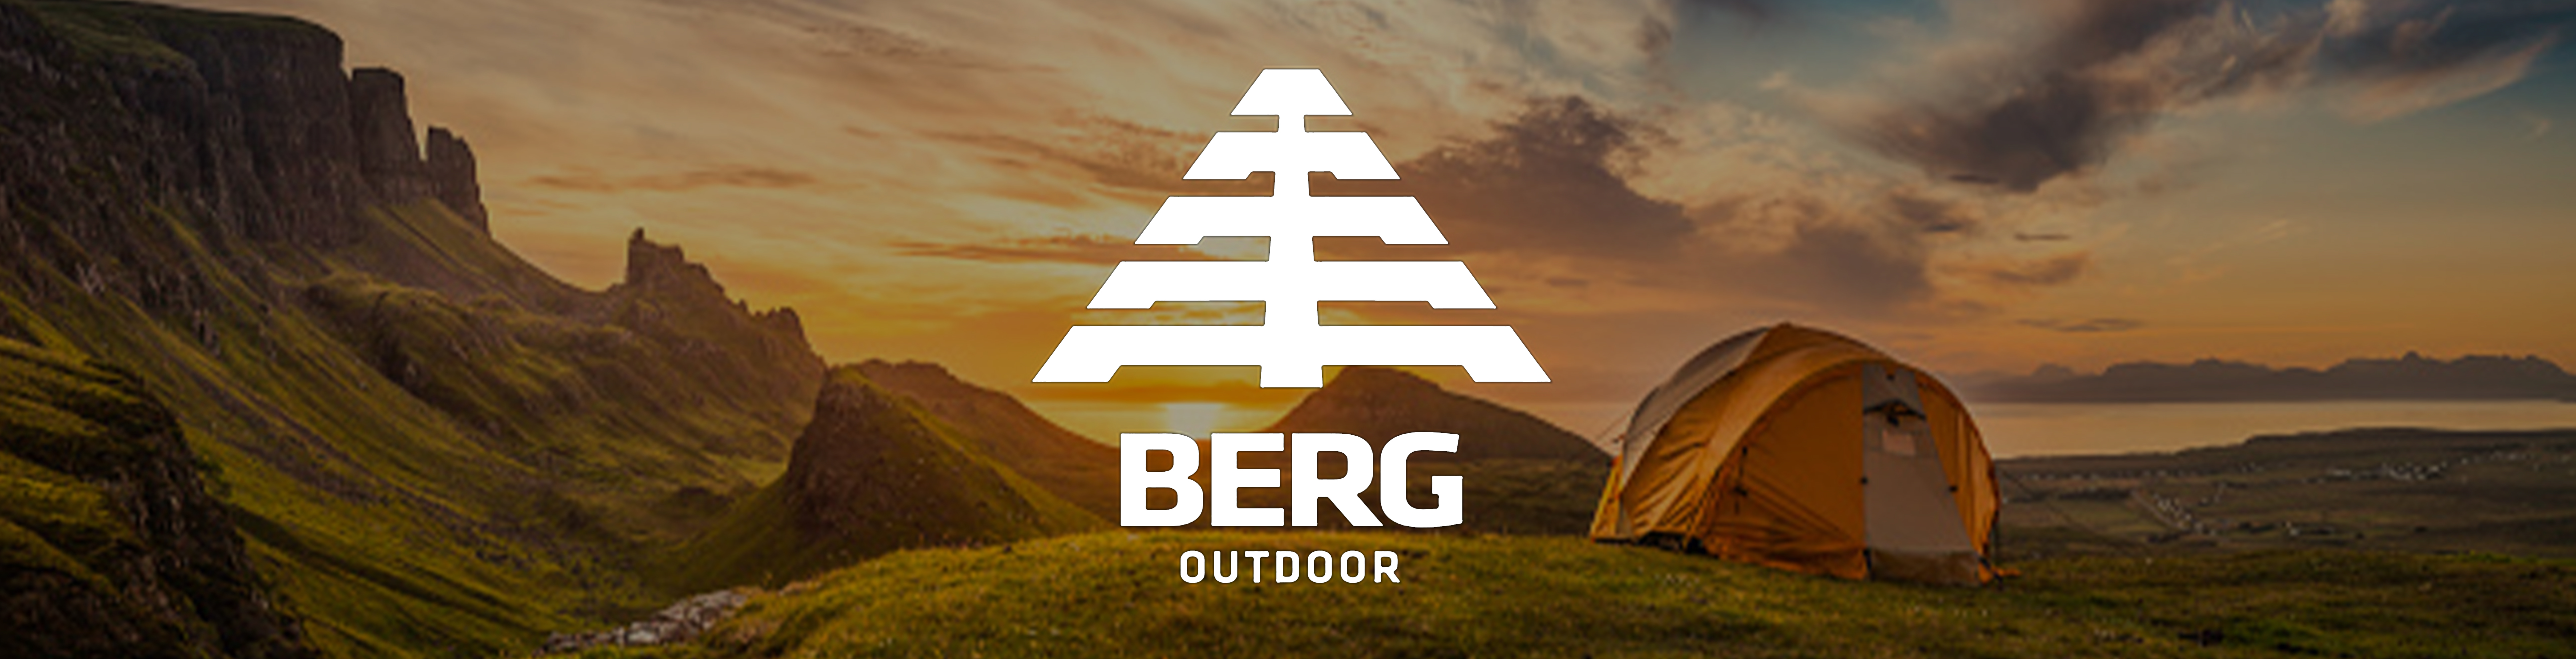 Berg Outdoor